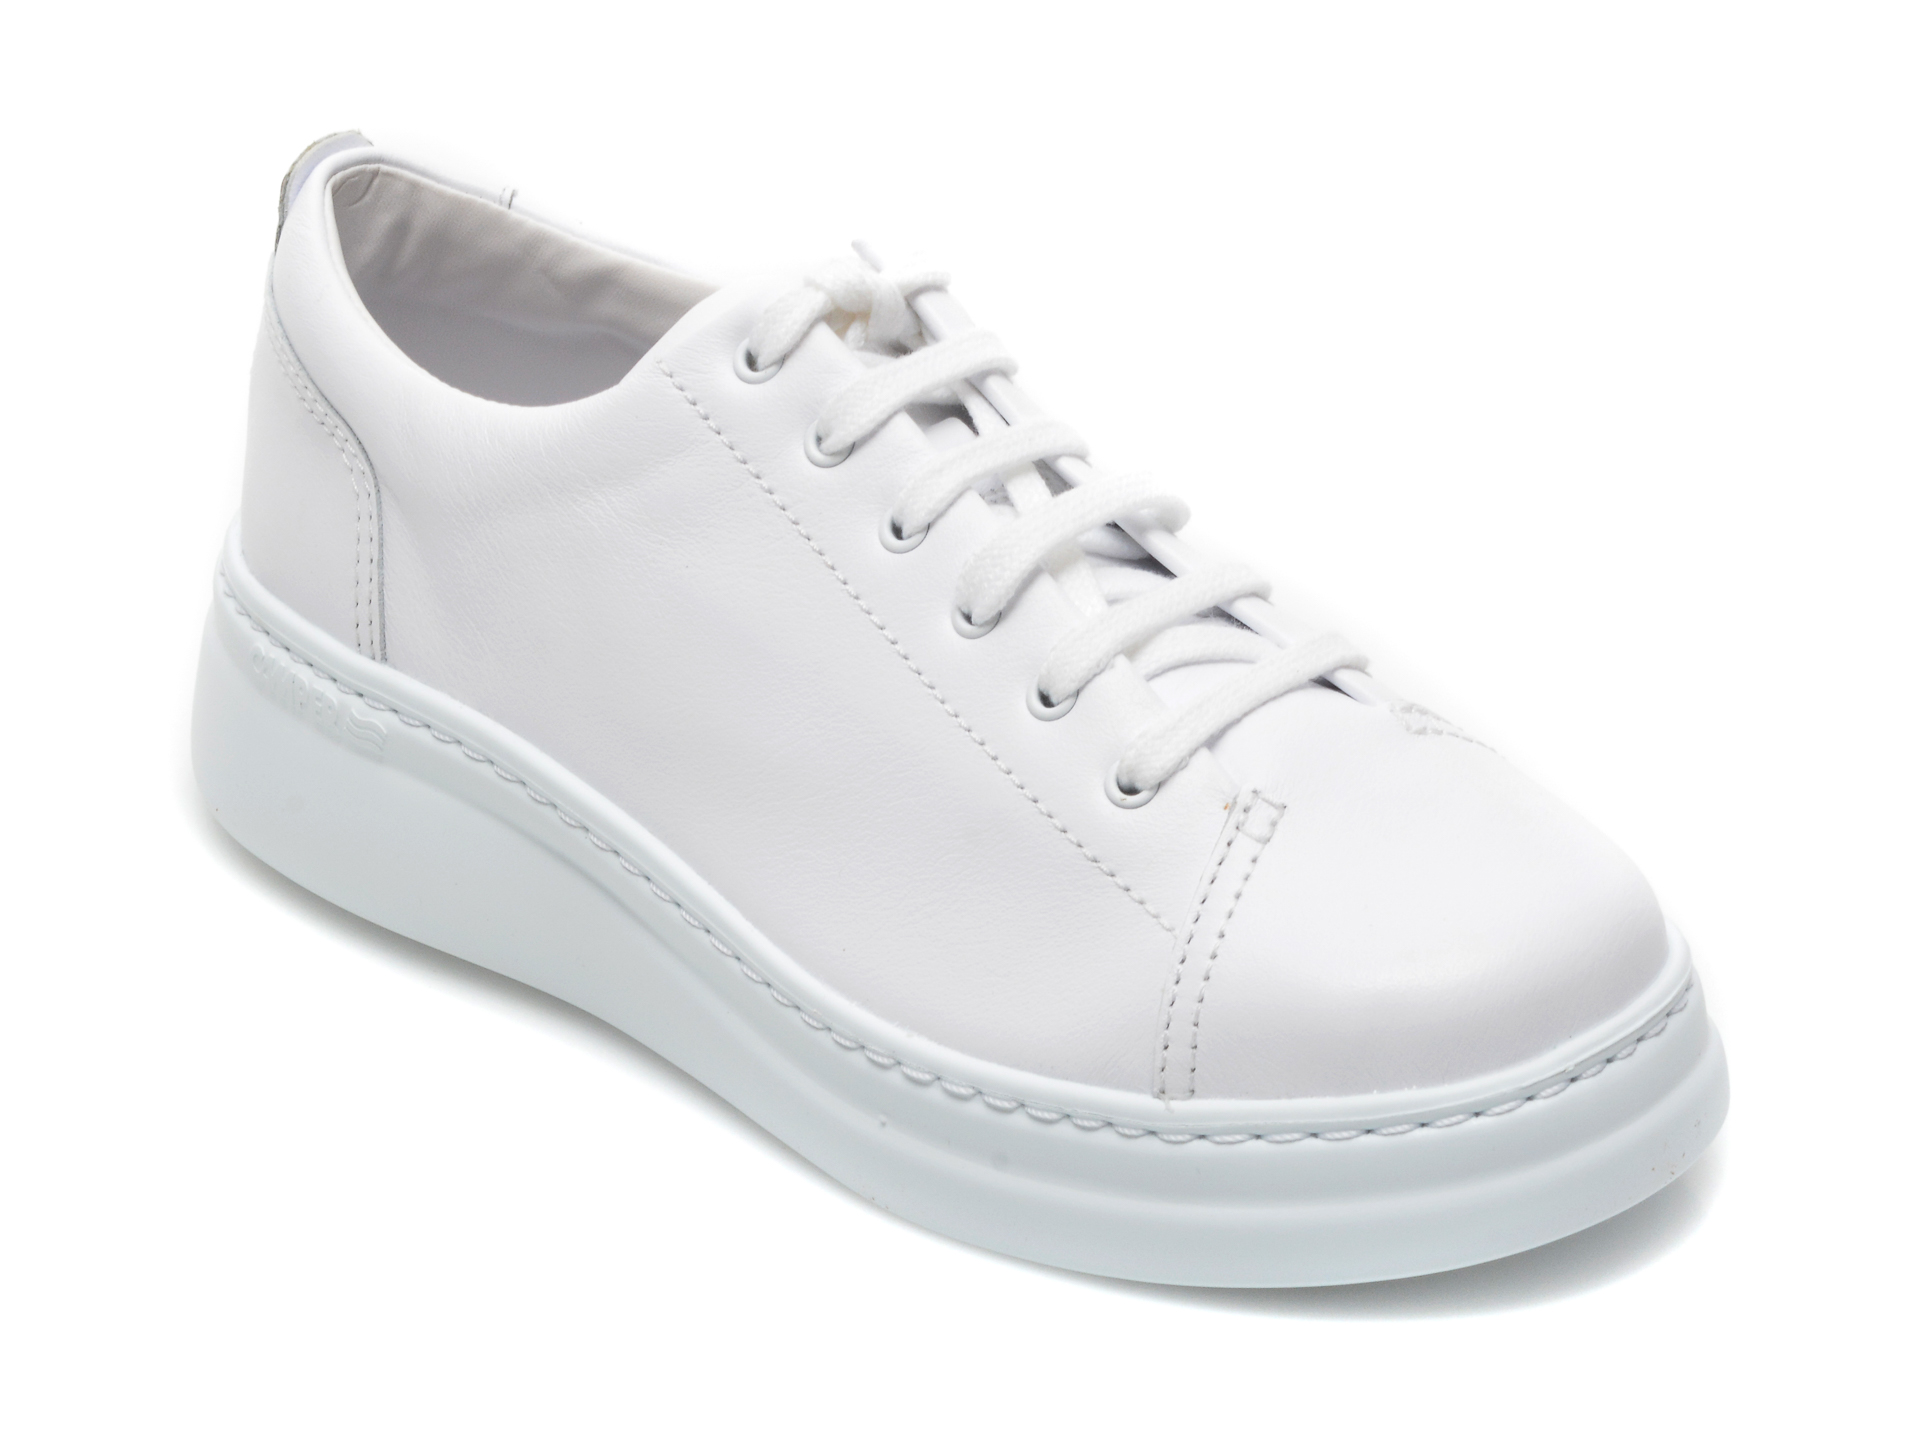 Pantofi CAMPER albi, K200508, din piele naturala Camper Camper